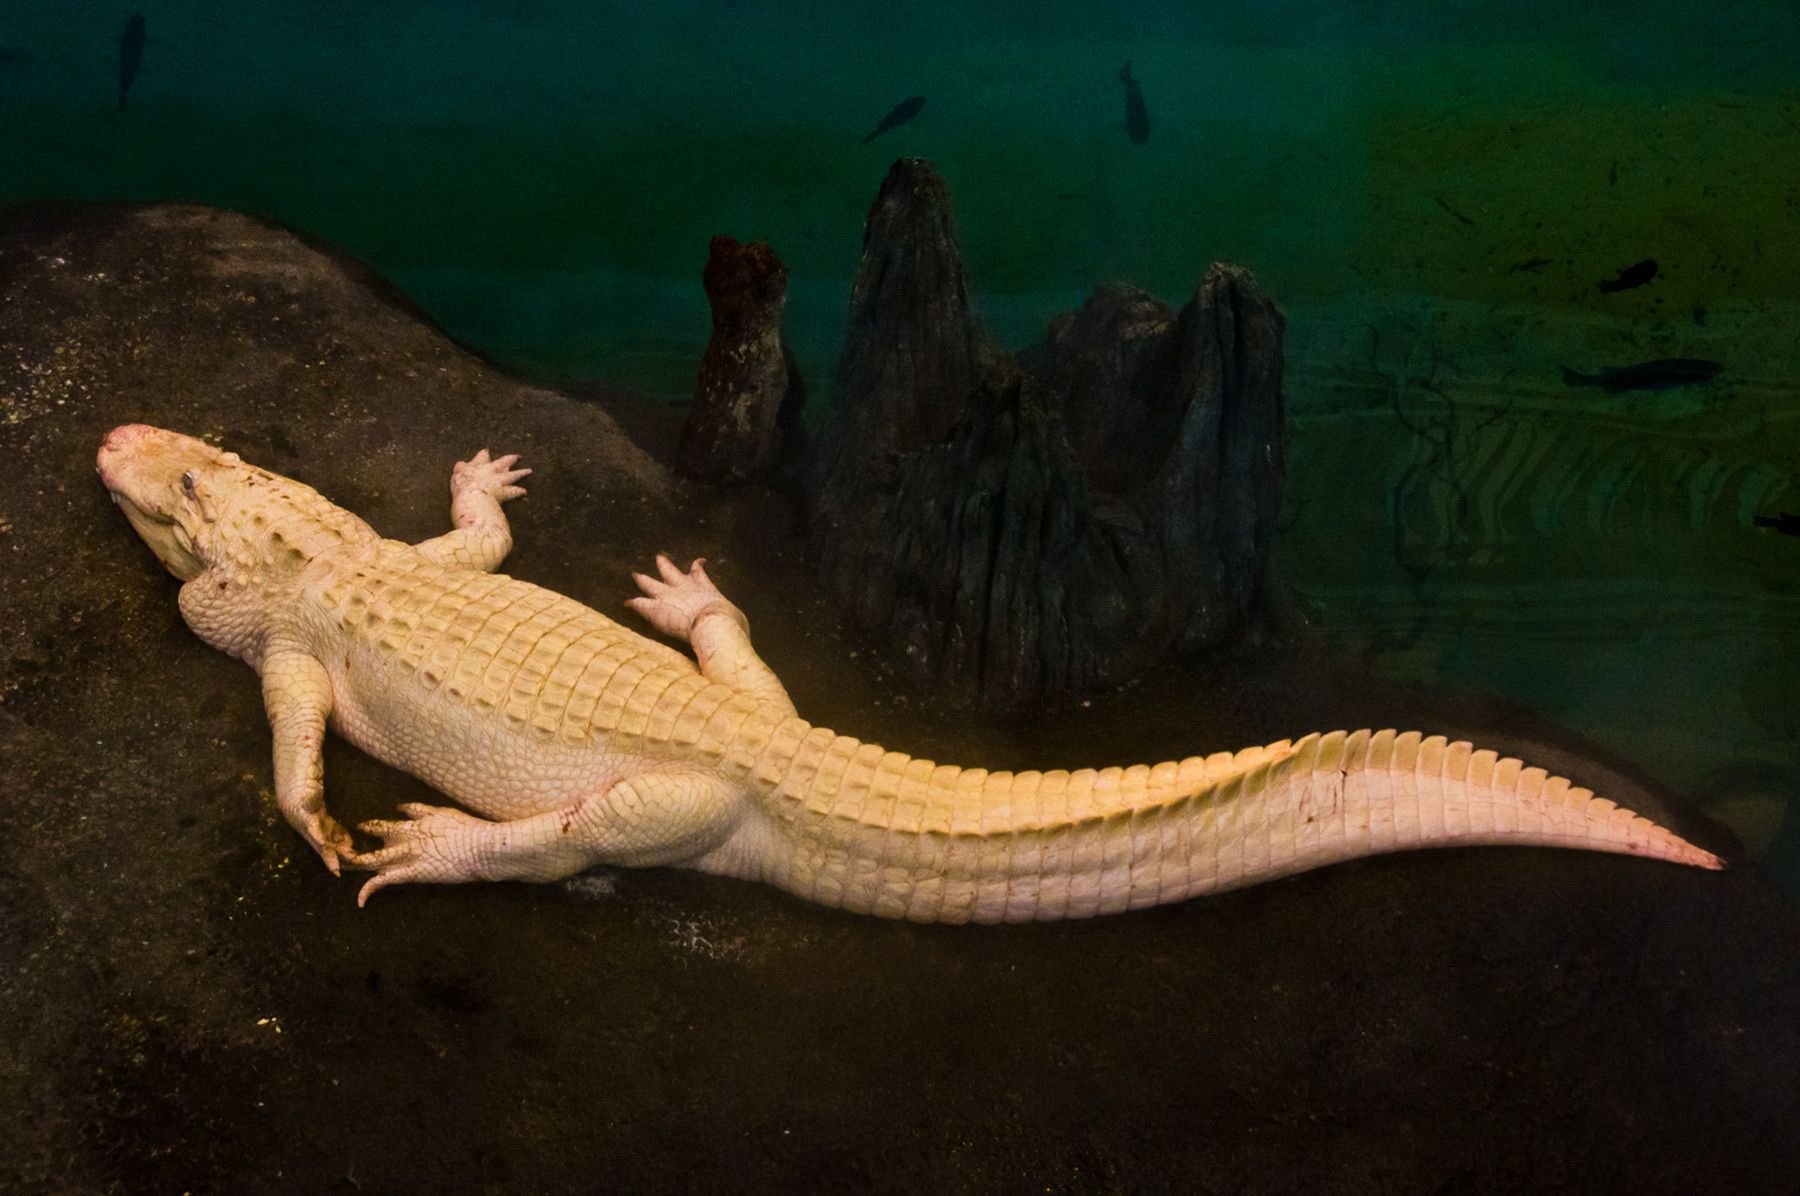 Albino Alligator, San Francisco Aquarium, California